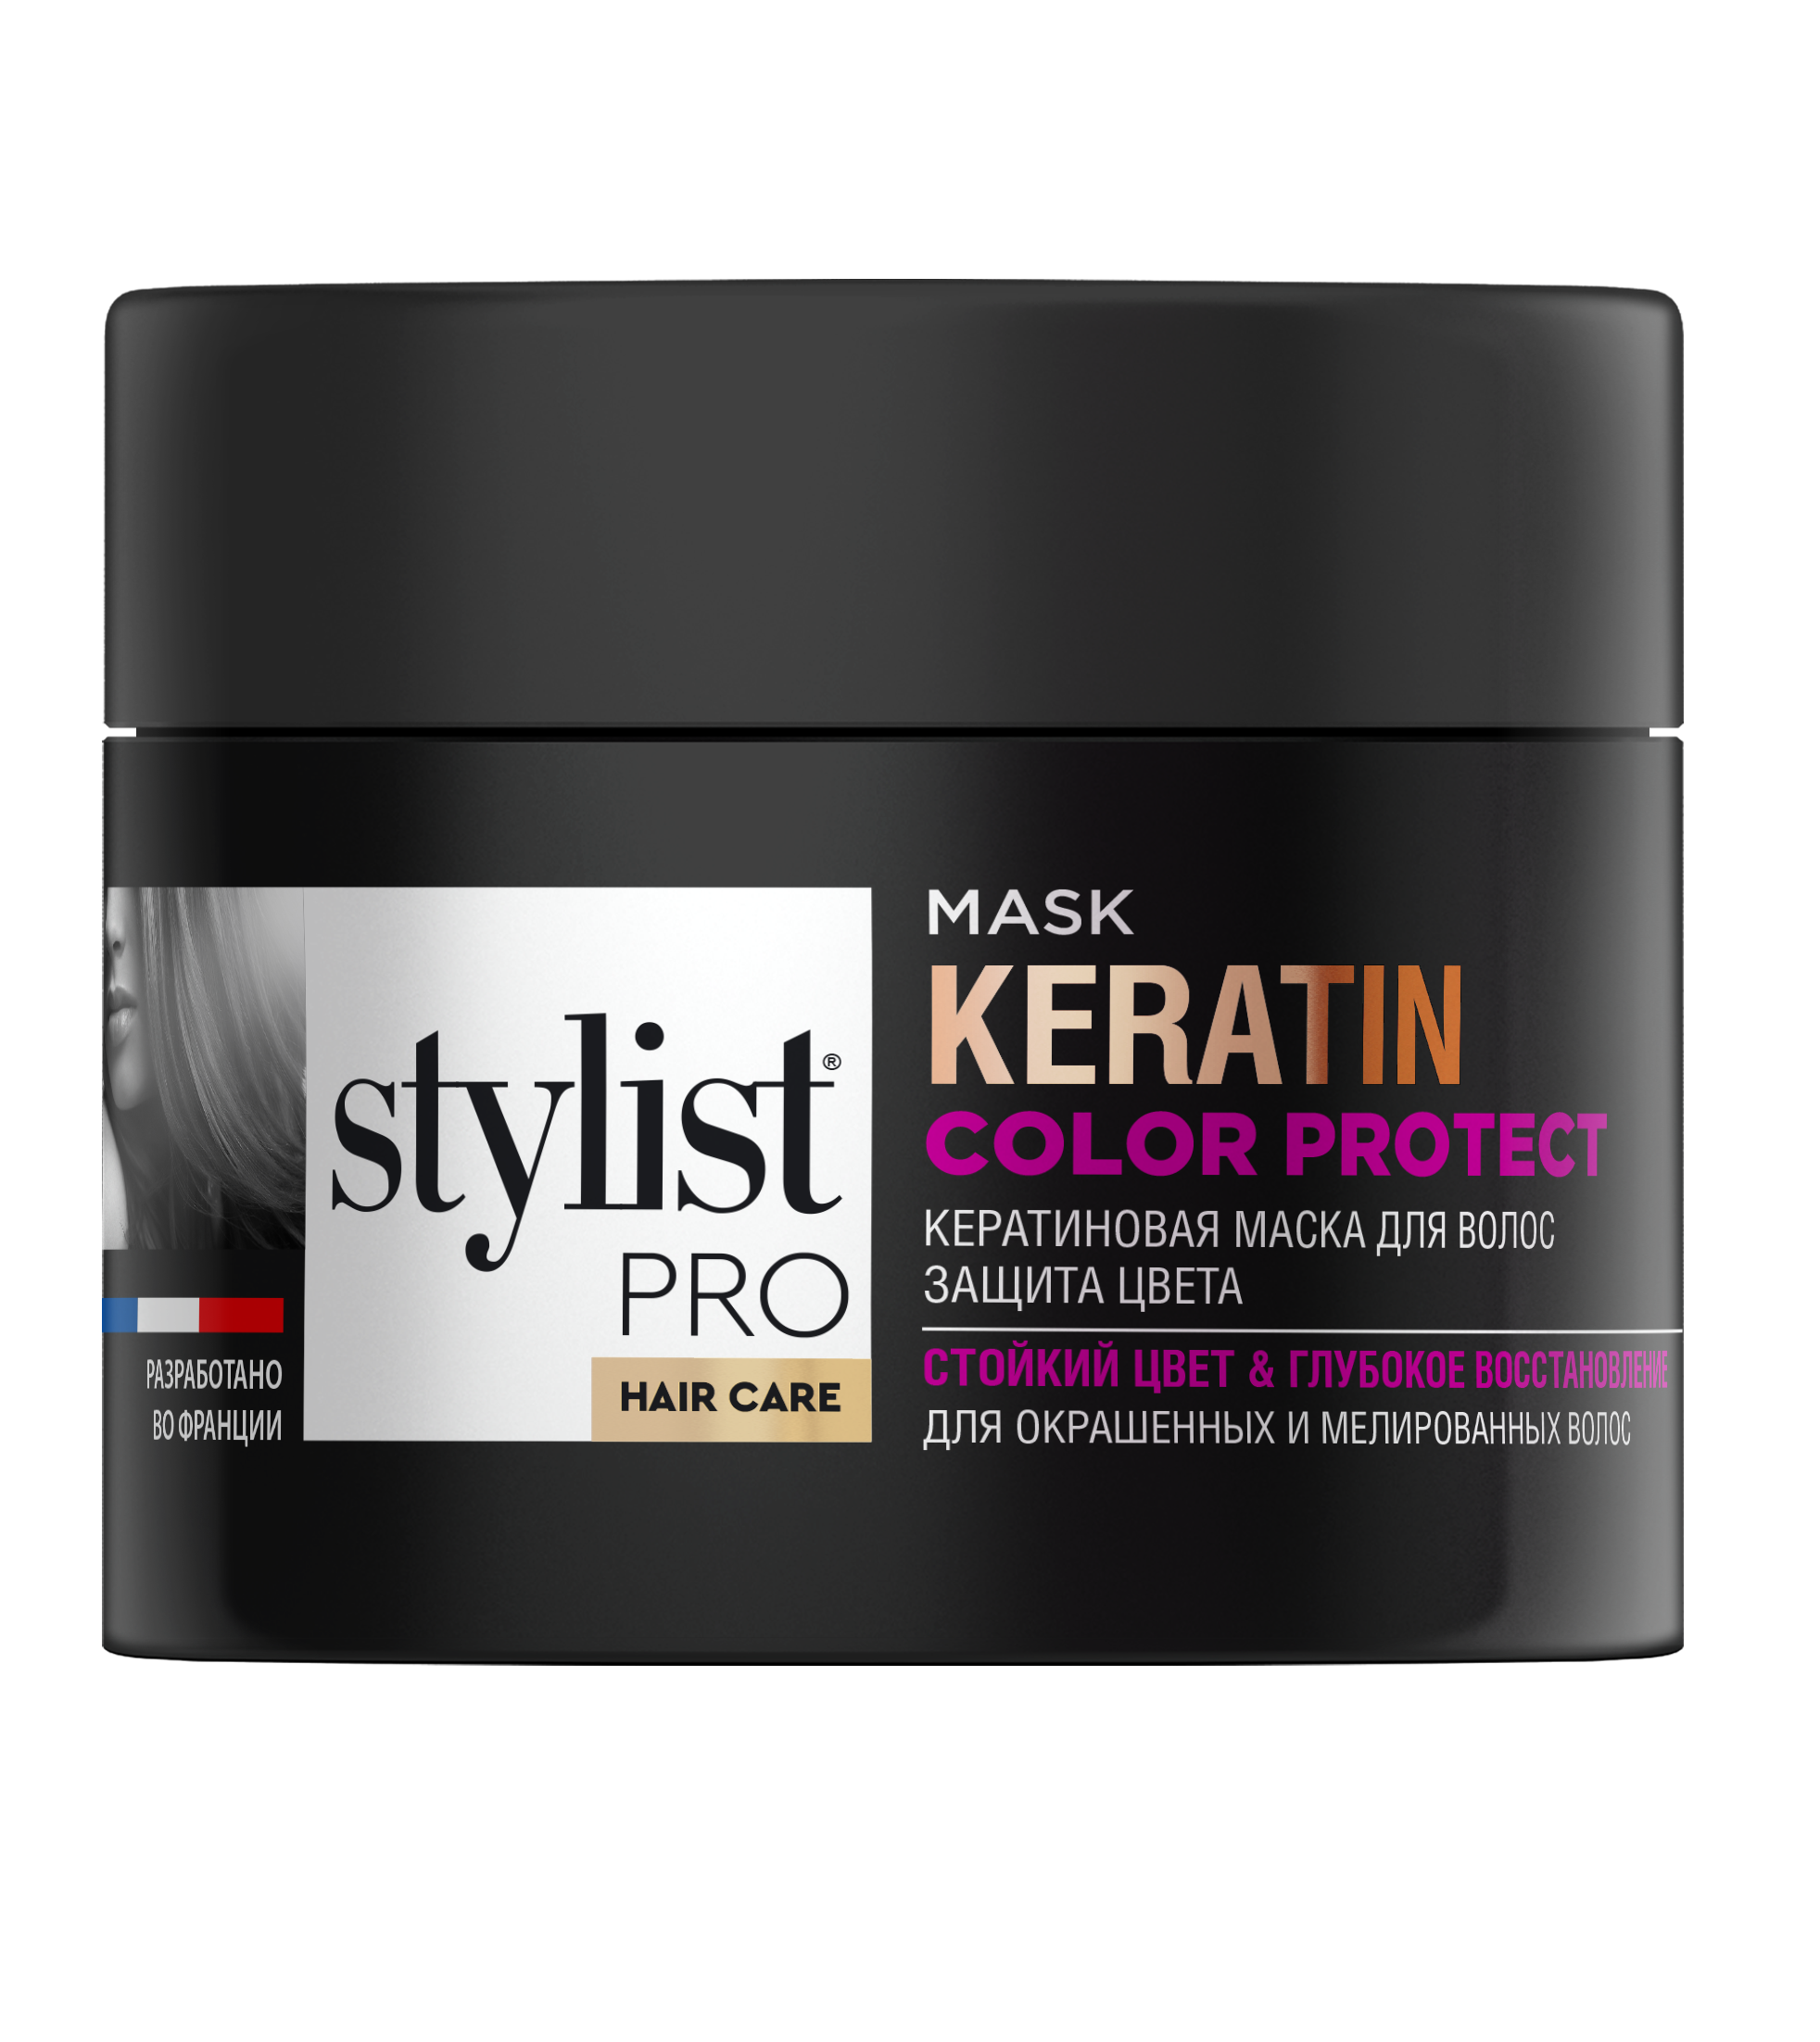 Маска для волос STYLIST PRO hair care Кератиновая защита цвета 220мл р - в интернет-магазине tut-beauty.by